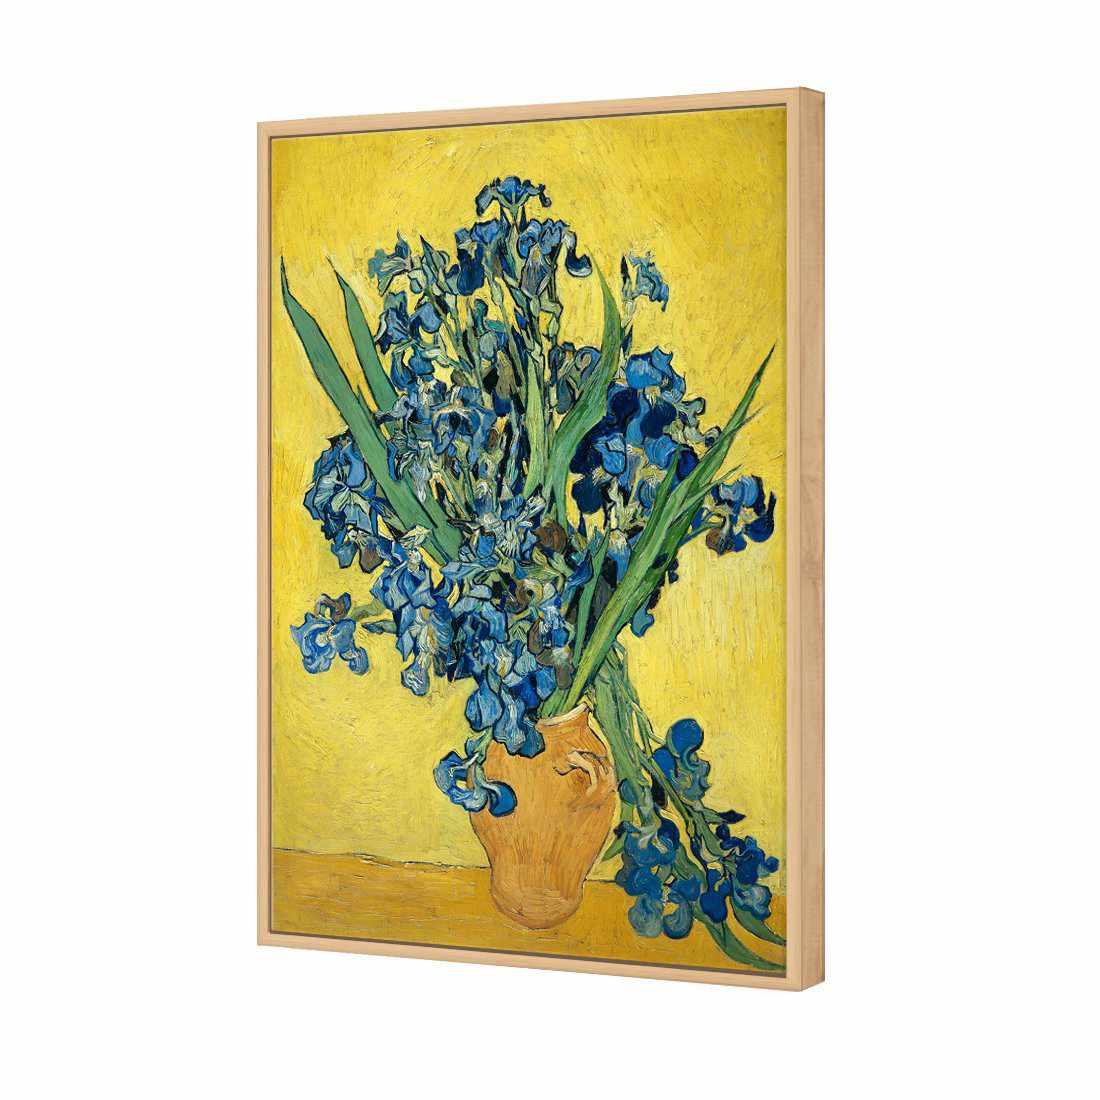 Vase Of Irises - Van Gogh Canvas Art-Canvas-Wall Art Designs-45x30cm-Canvas - Oak Frame-Wall Art Designs